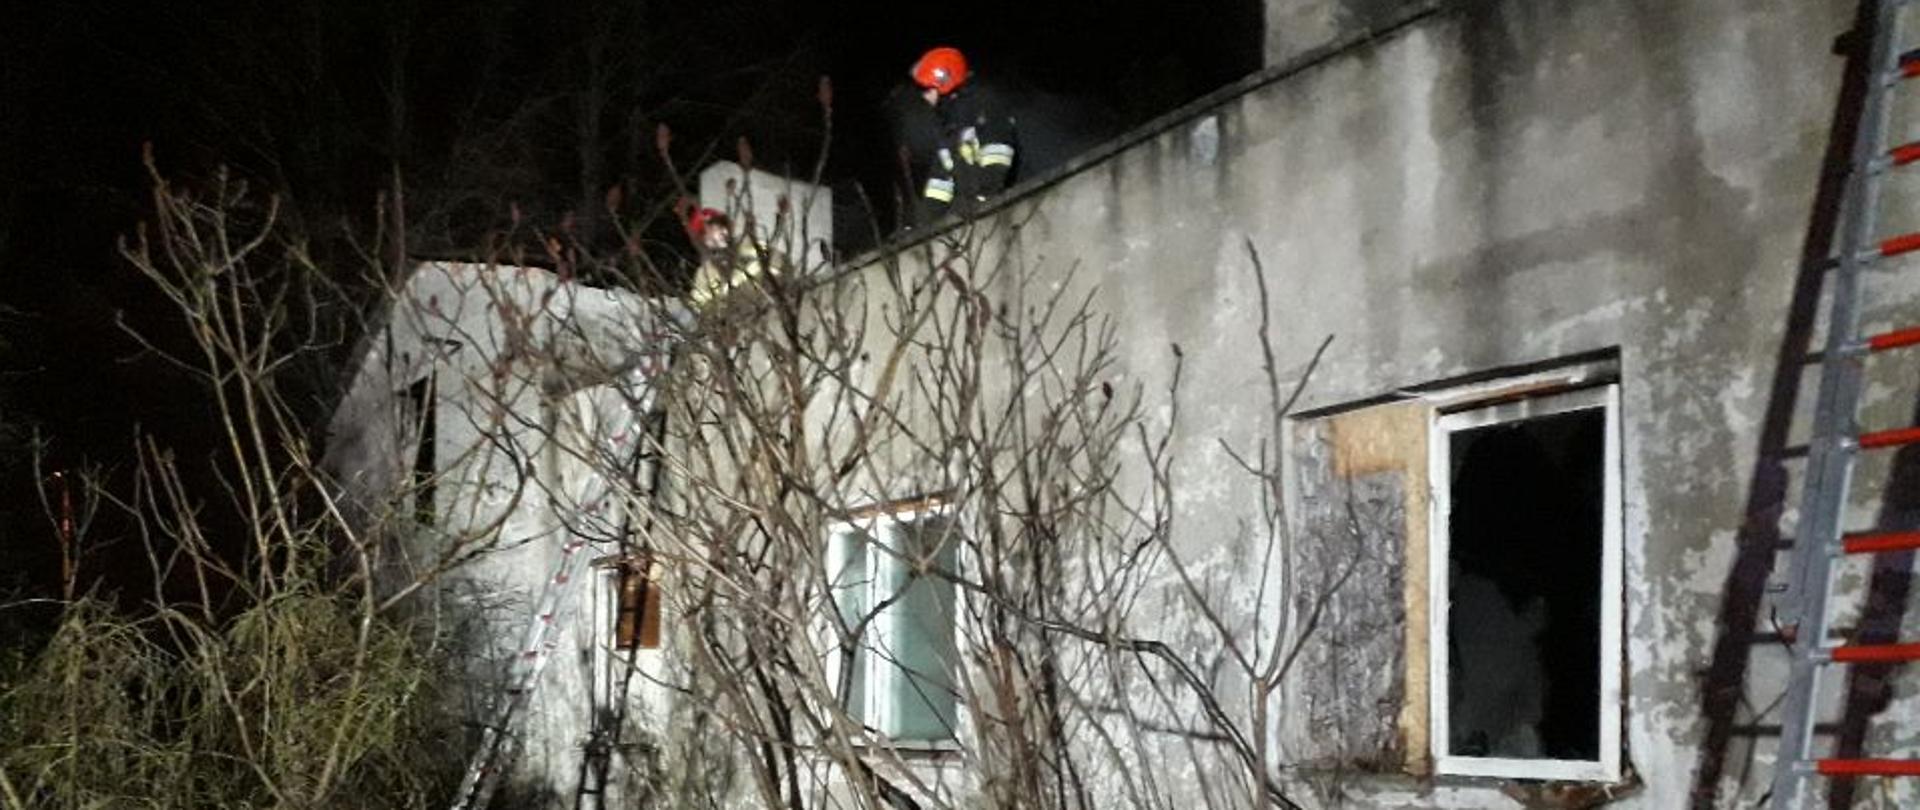 Na zdjęciu widać budynek parterowy, w którym doszło do pożaru oraz strażaków pracujących na dachu.